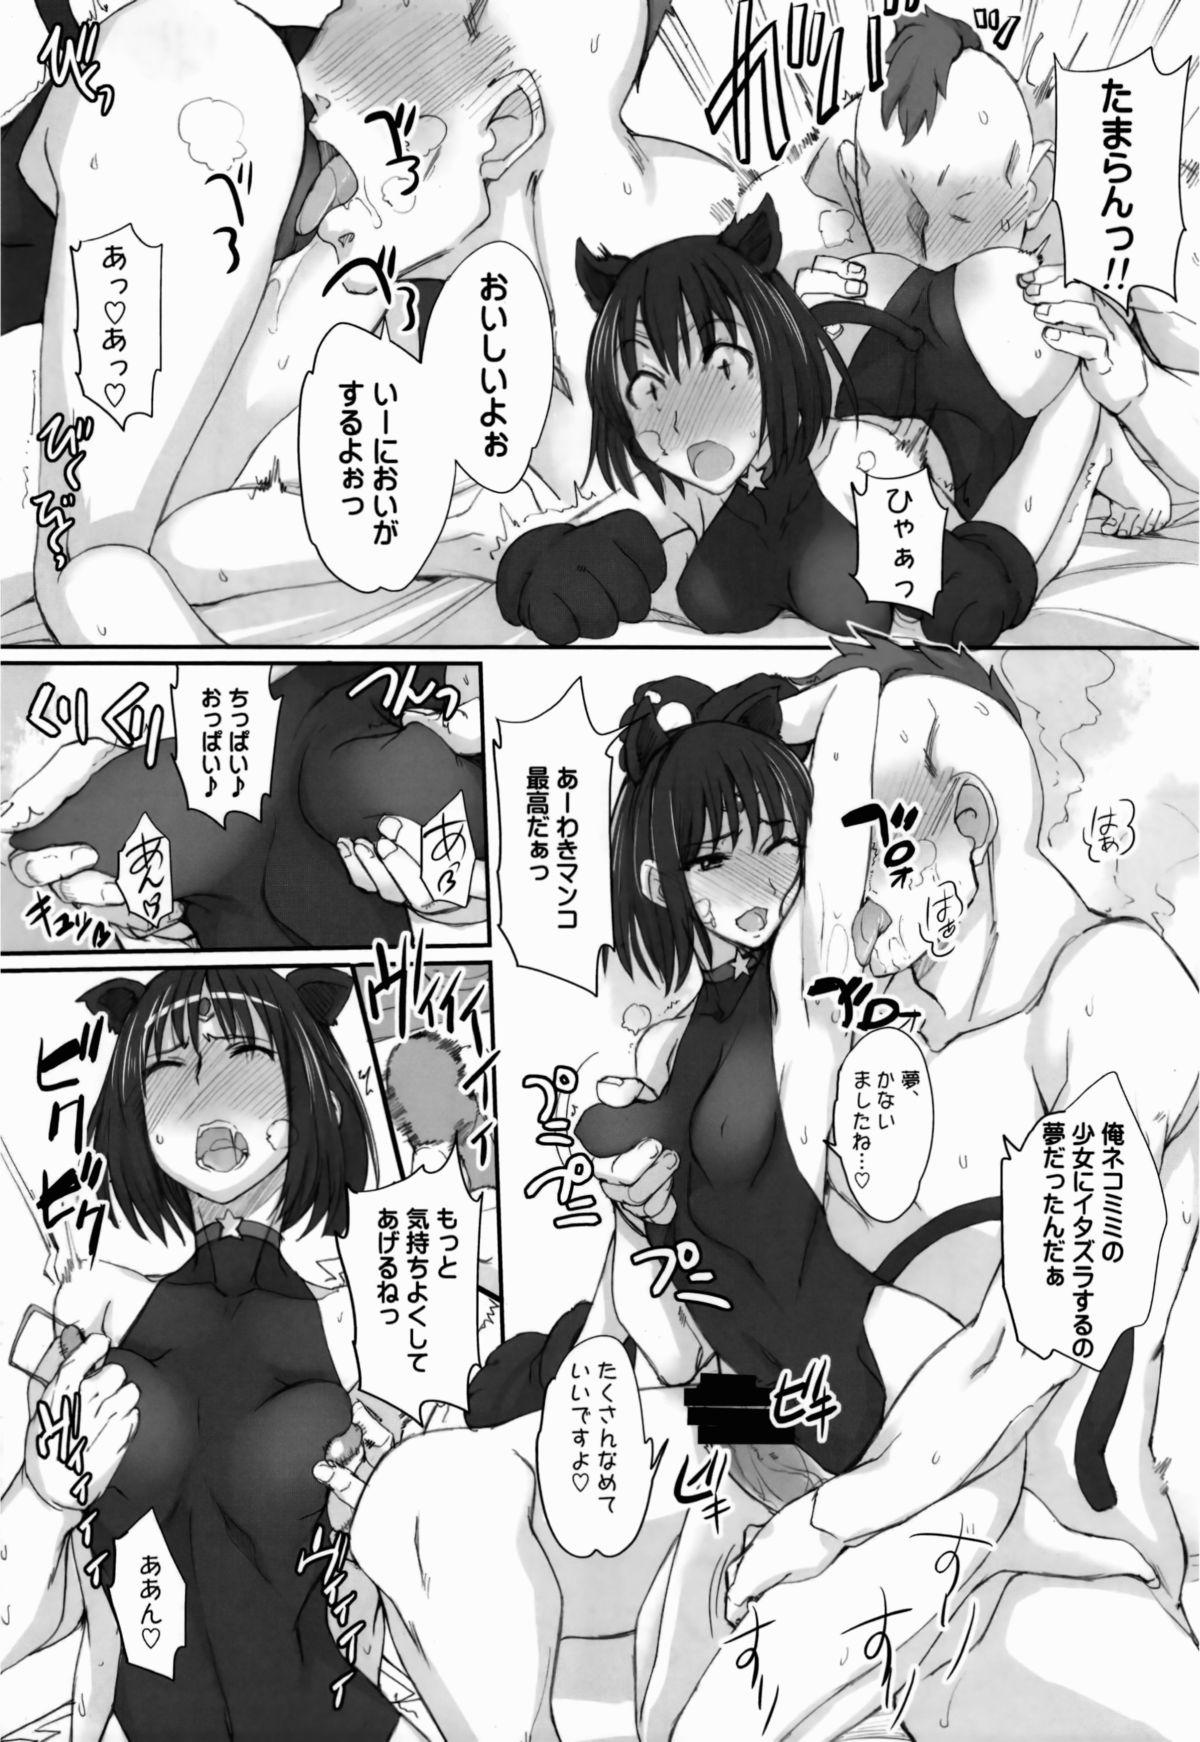 Women Sucking Dick Getsu Ka Sui Moku Kin Do Nichi 8 - Sailor moon Feet - Page 8